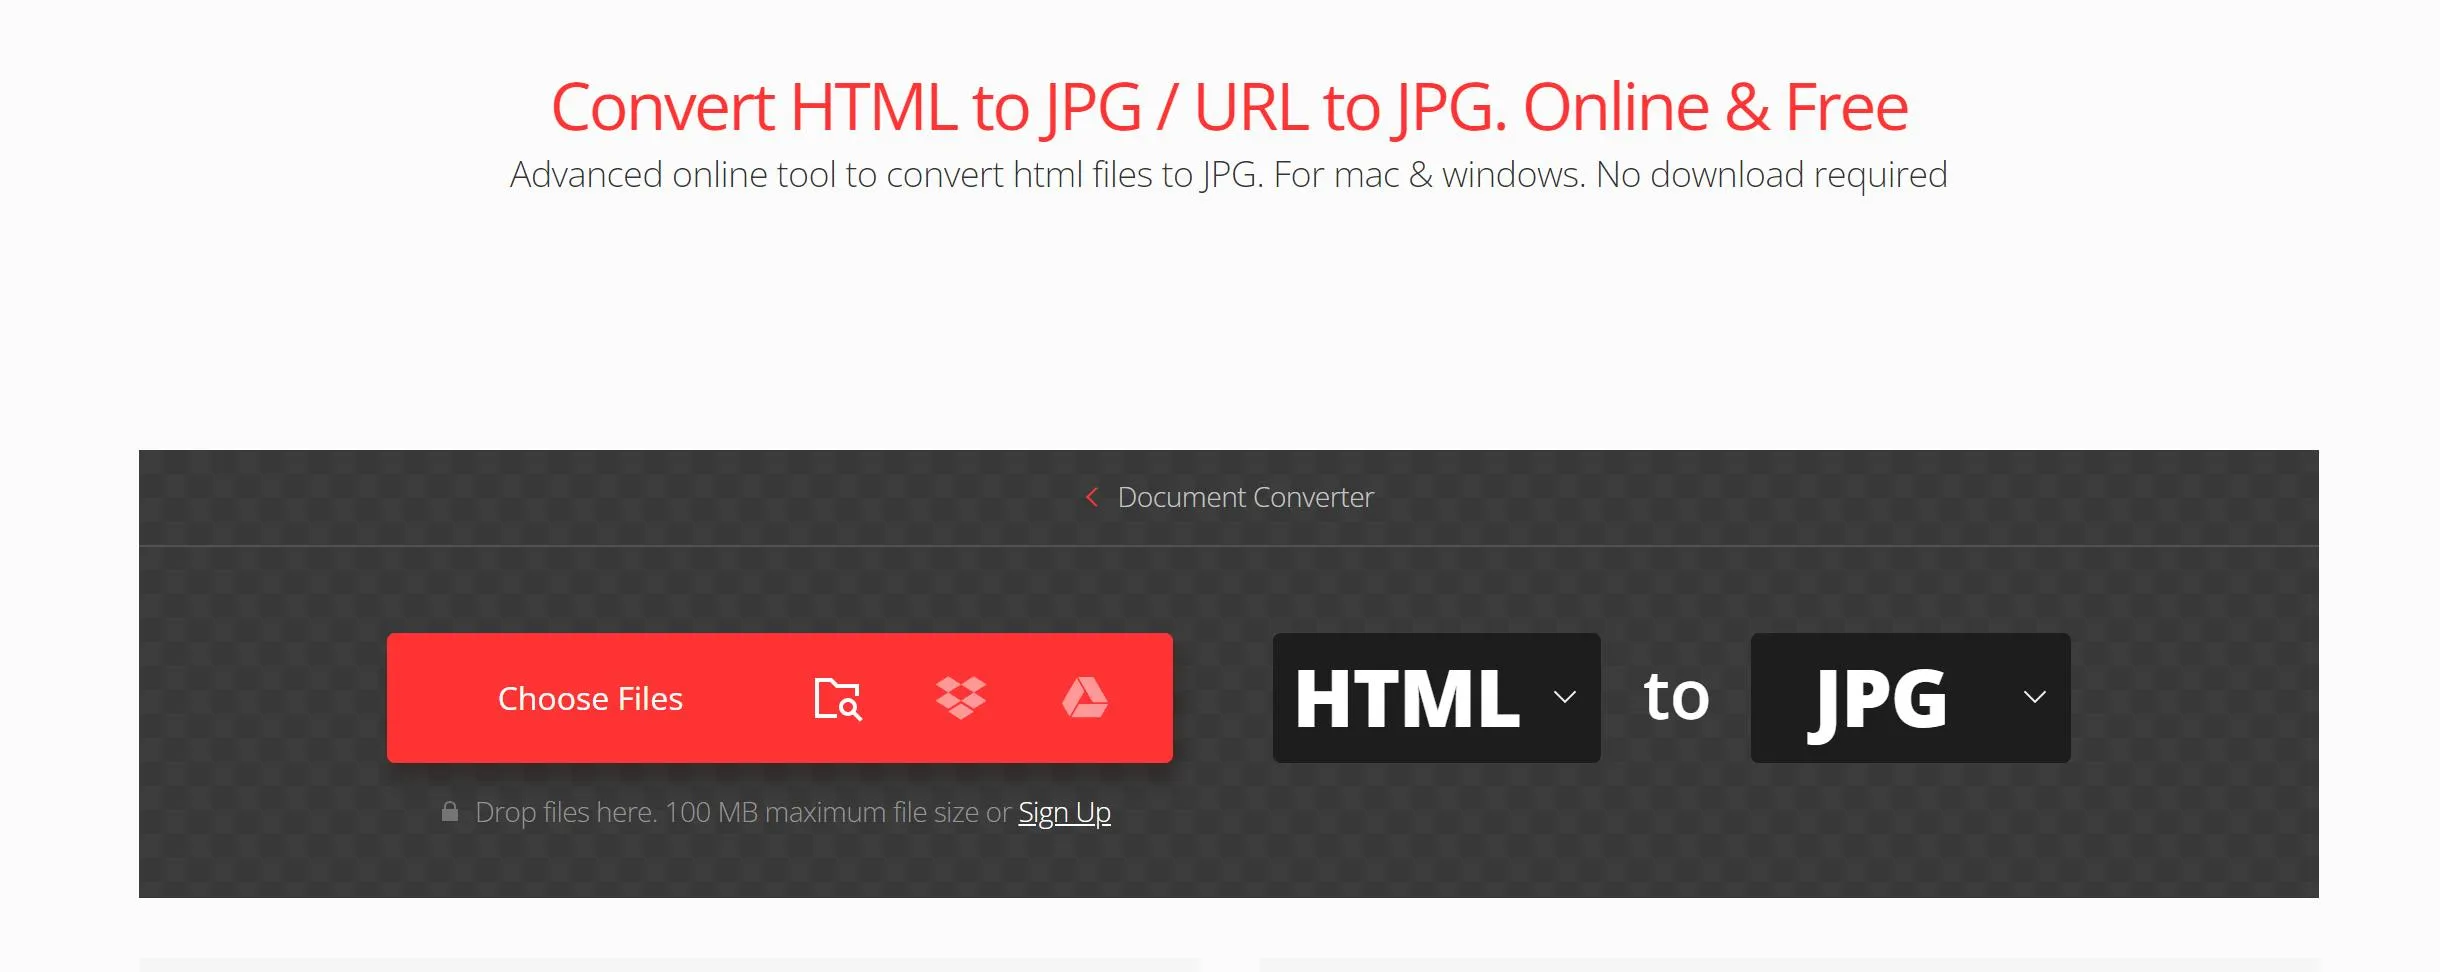 Converti il tuo HTML in JPG online in Convertio